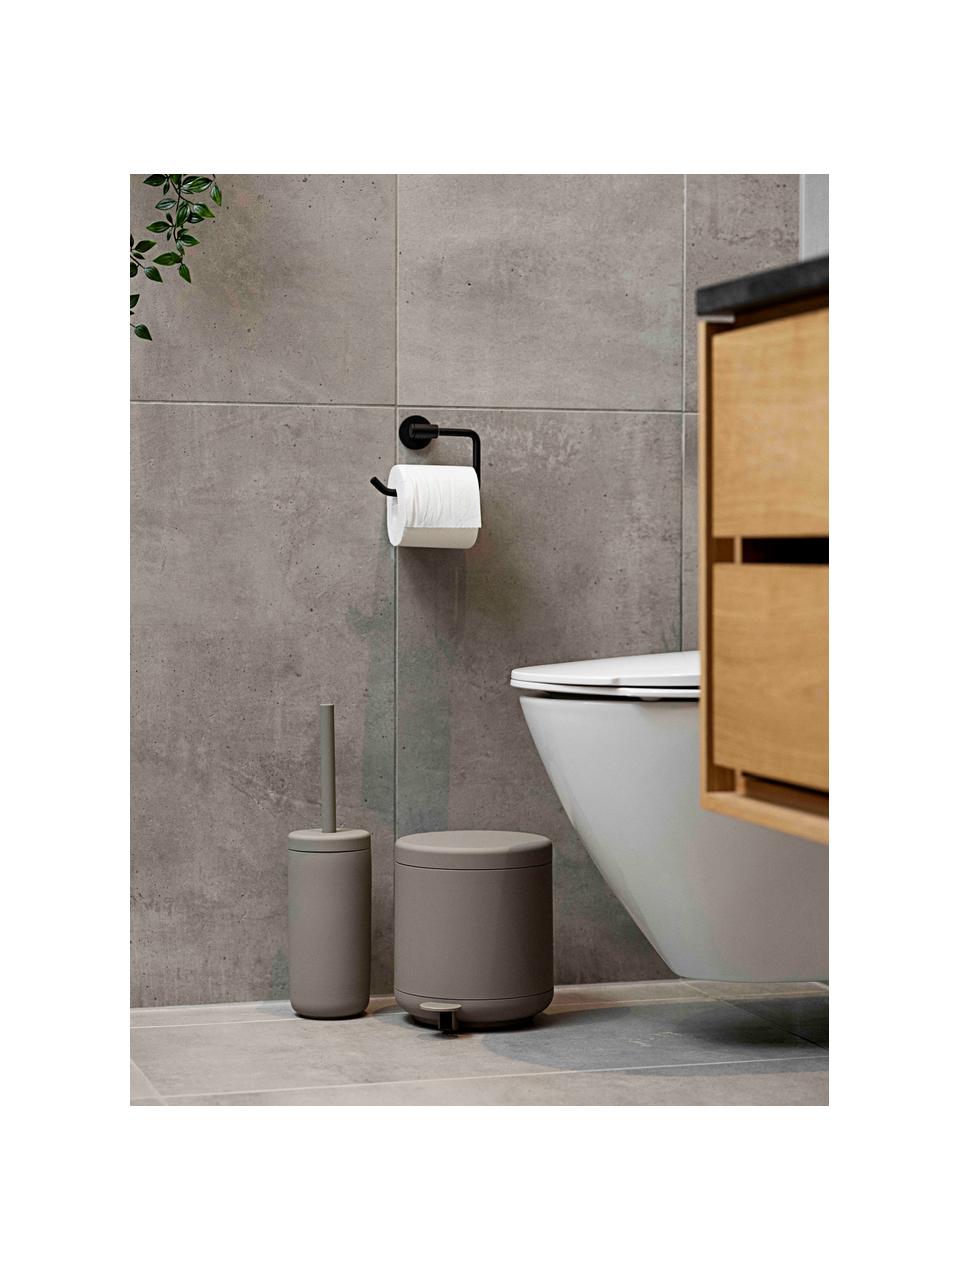 Toilettenbürste Ume mit Behälter, Behälter: Steingut überzogen mit So, Griff: Kunststoff, Greige, Ø 10 x H 39 cm